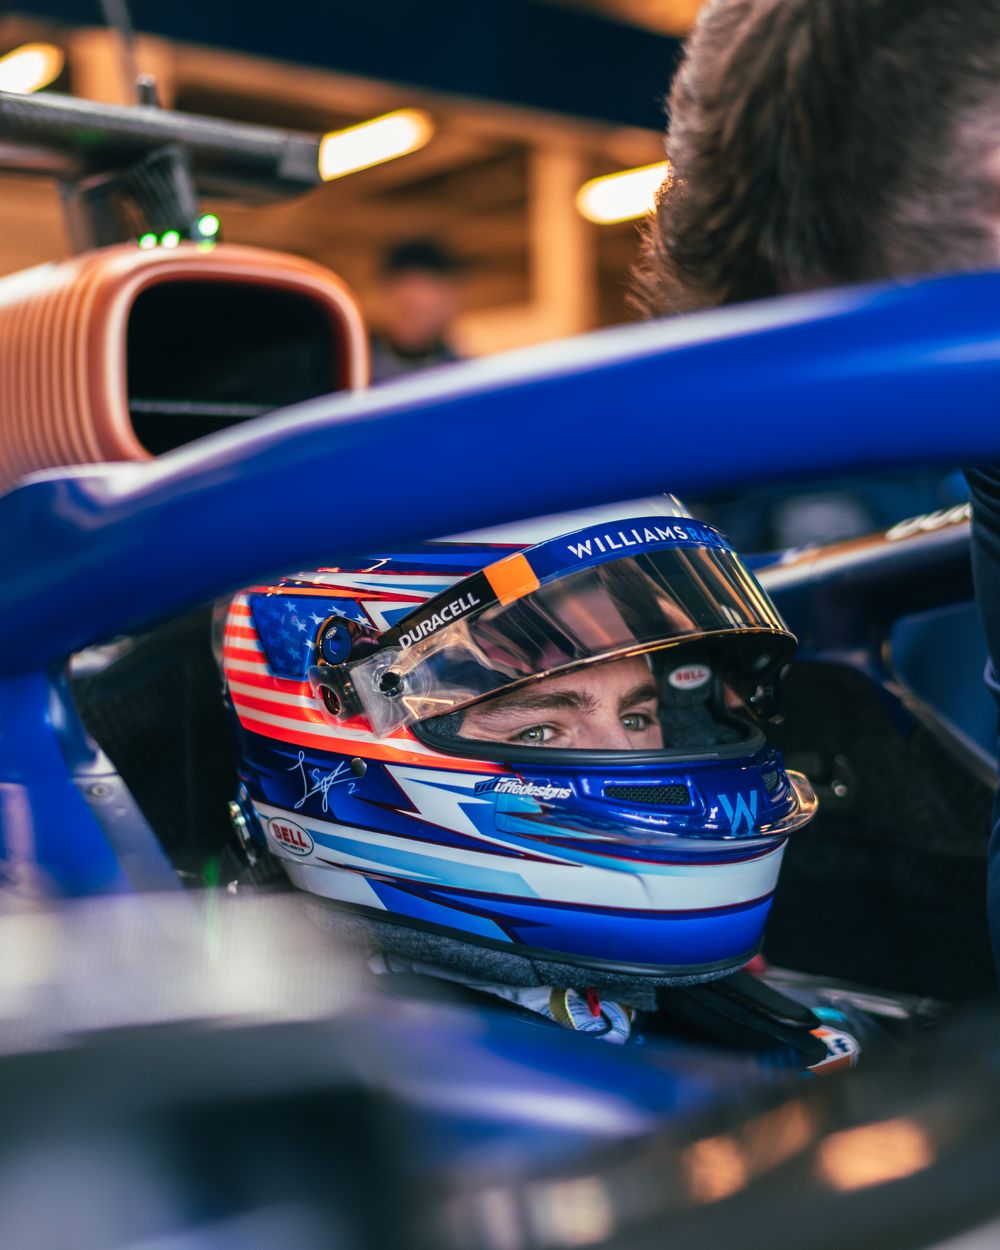 F1 | Williams FW45, le immagini dello shakedown di Silverstone [Gallery]